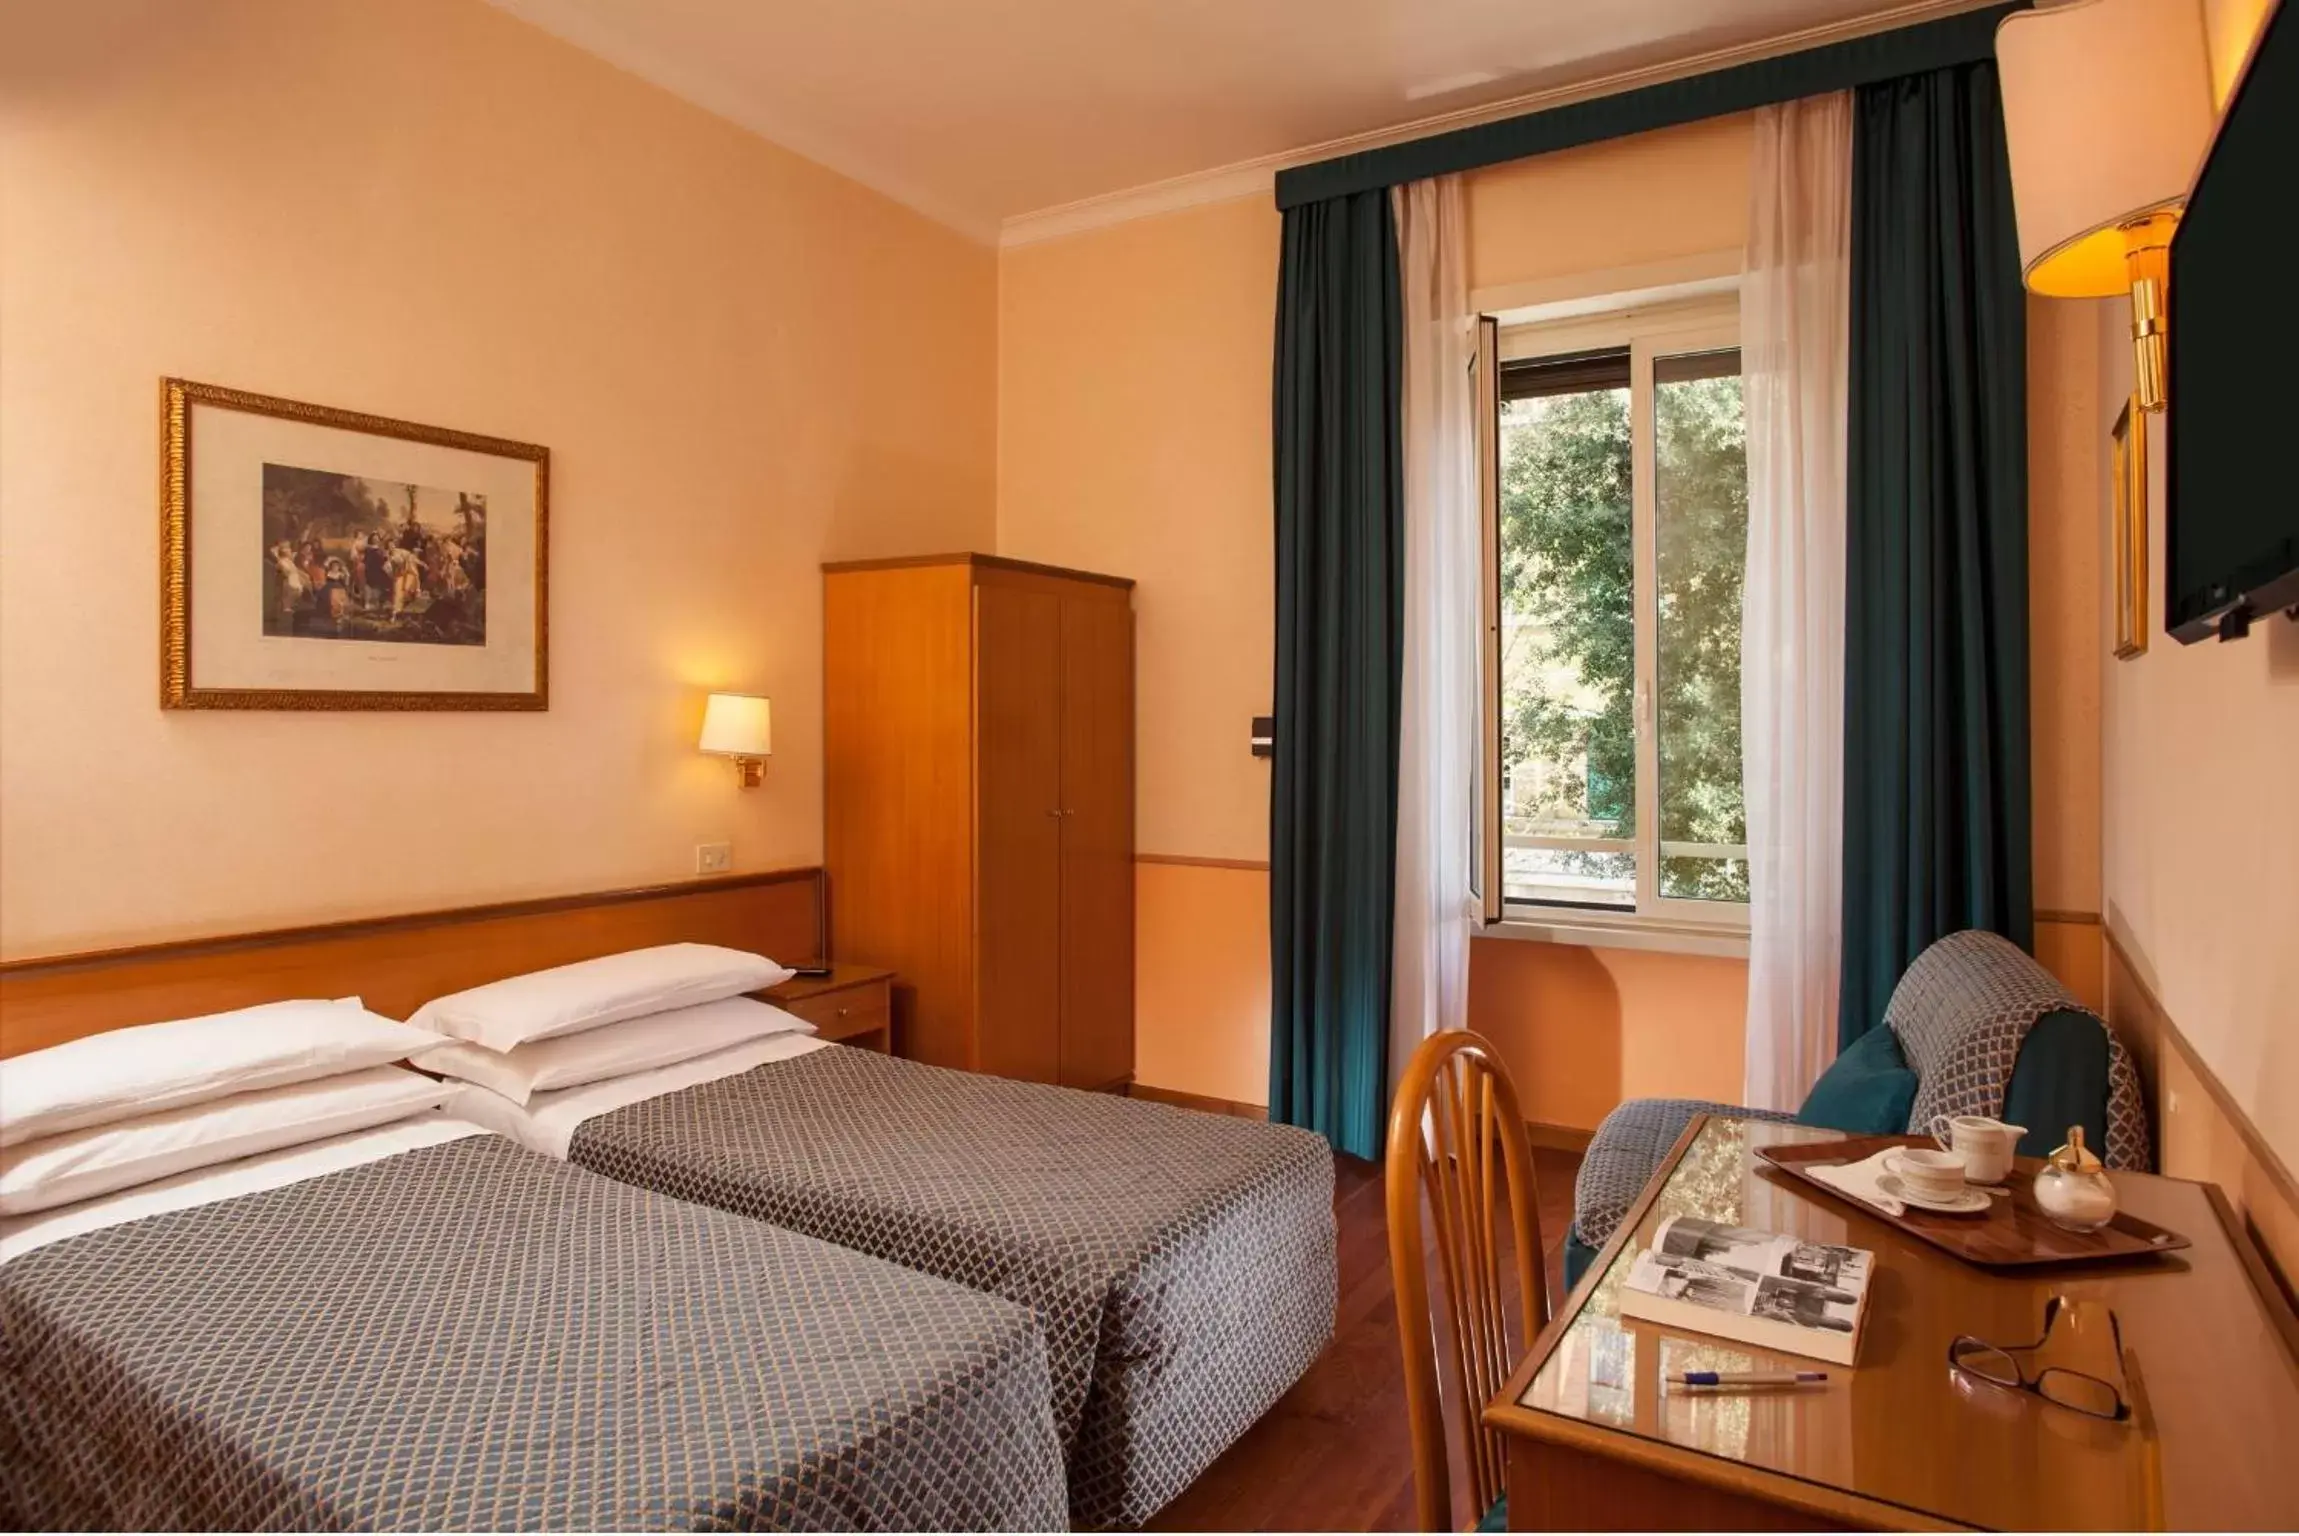 Double Room in Hotel Piemonte